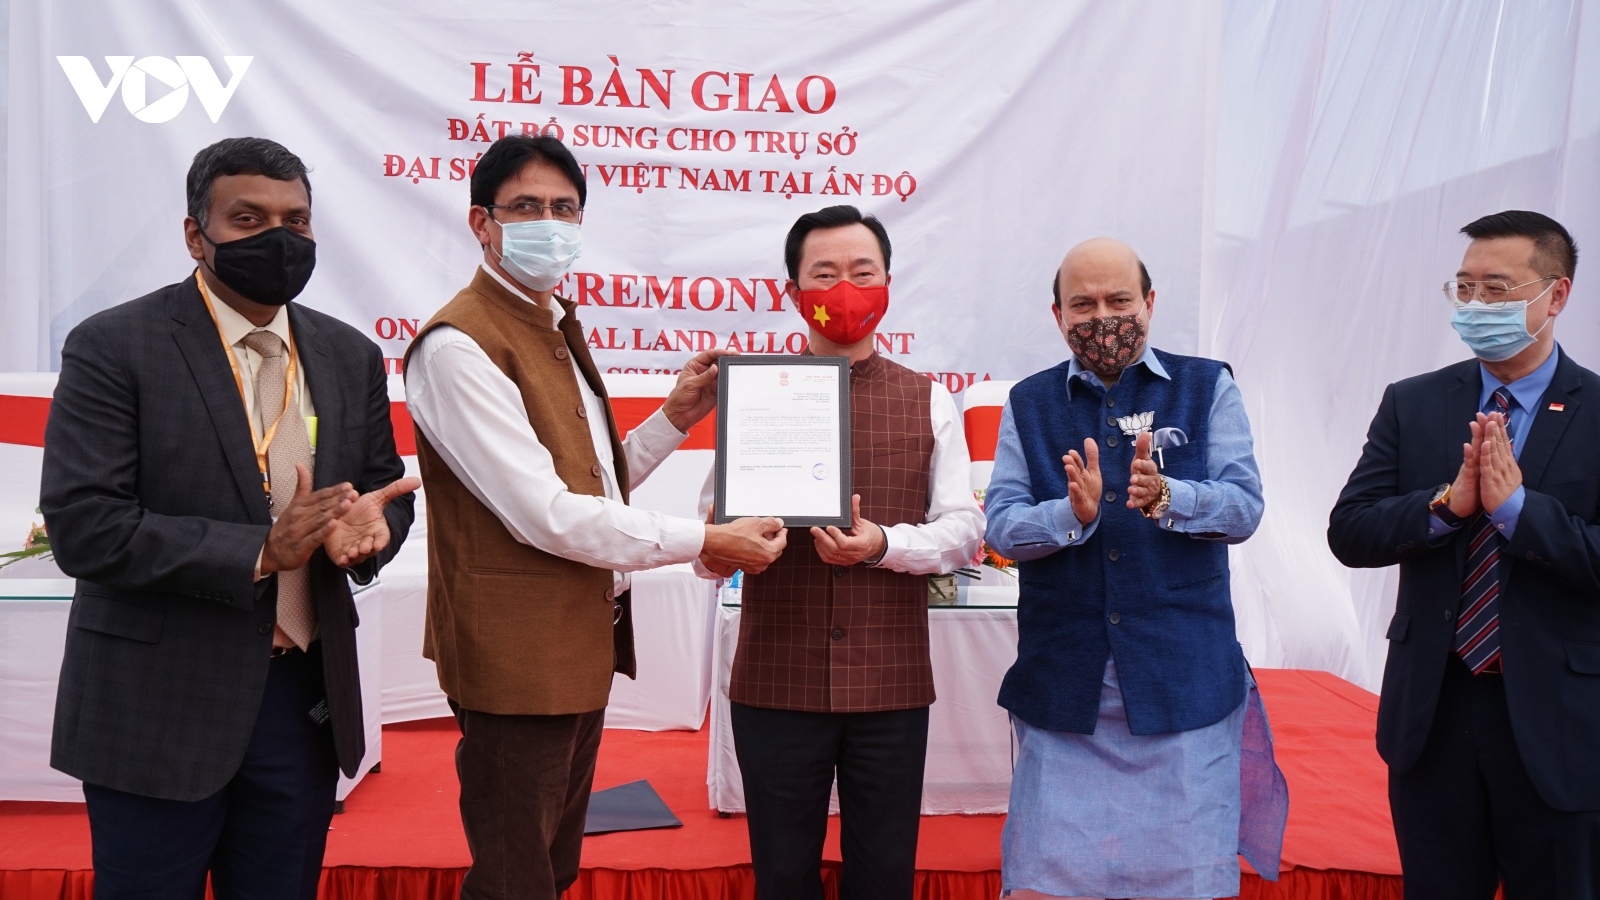 ĐSQ Việt Nam tại Ấn Độ nhận bàn giao đất bổ sung cho công trình trụ sở mới